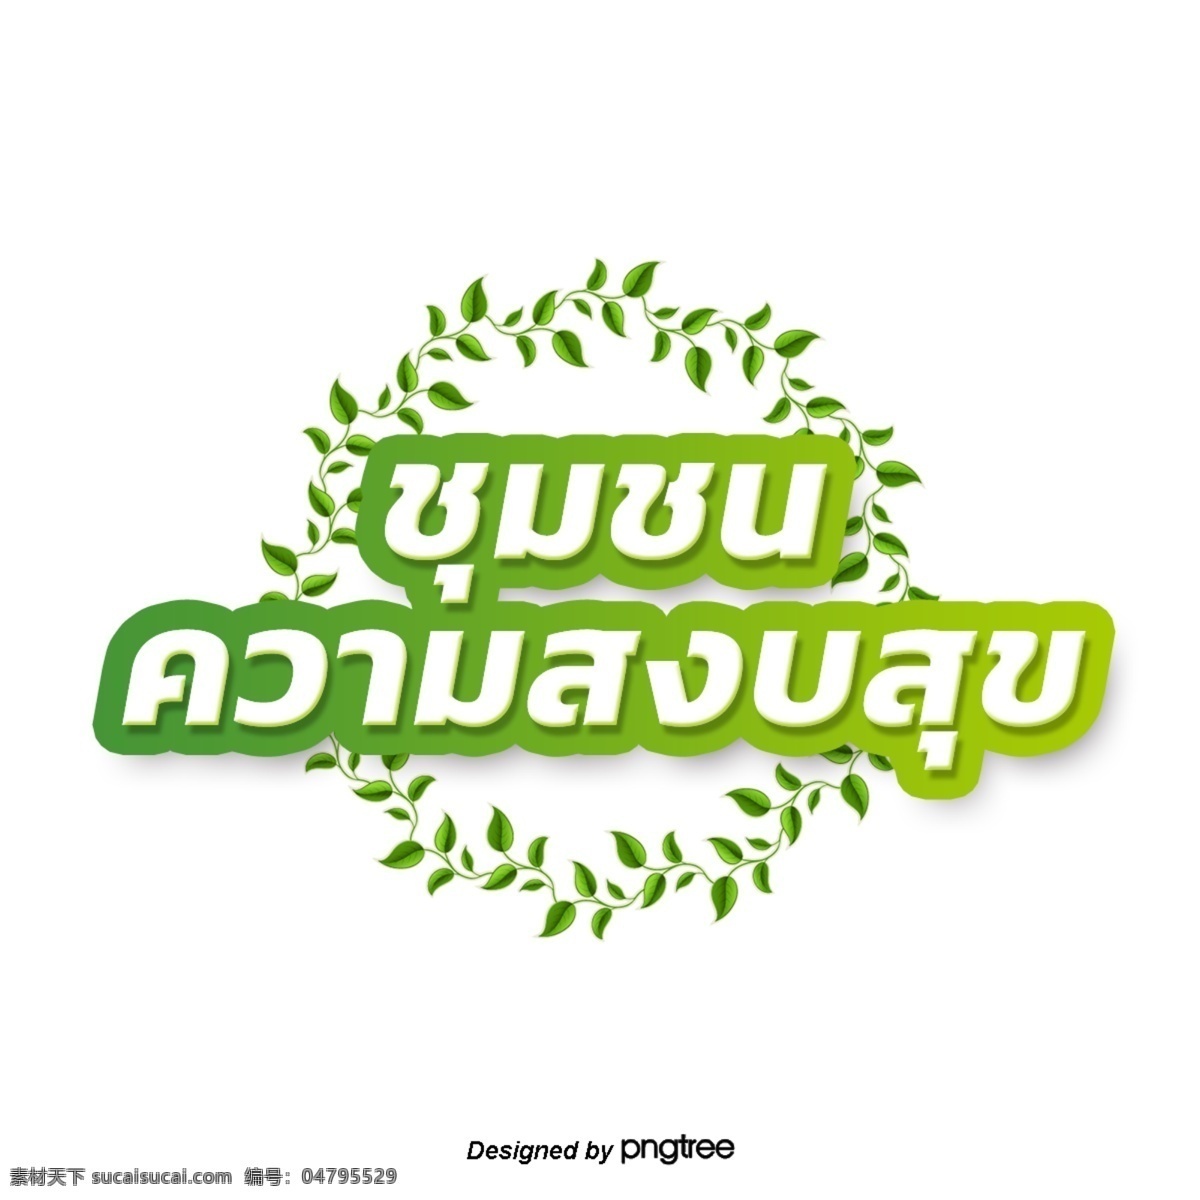 泰国 白色 字体 边缘 浅绿色 叶子 圈子 社区 和平 圆圈